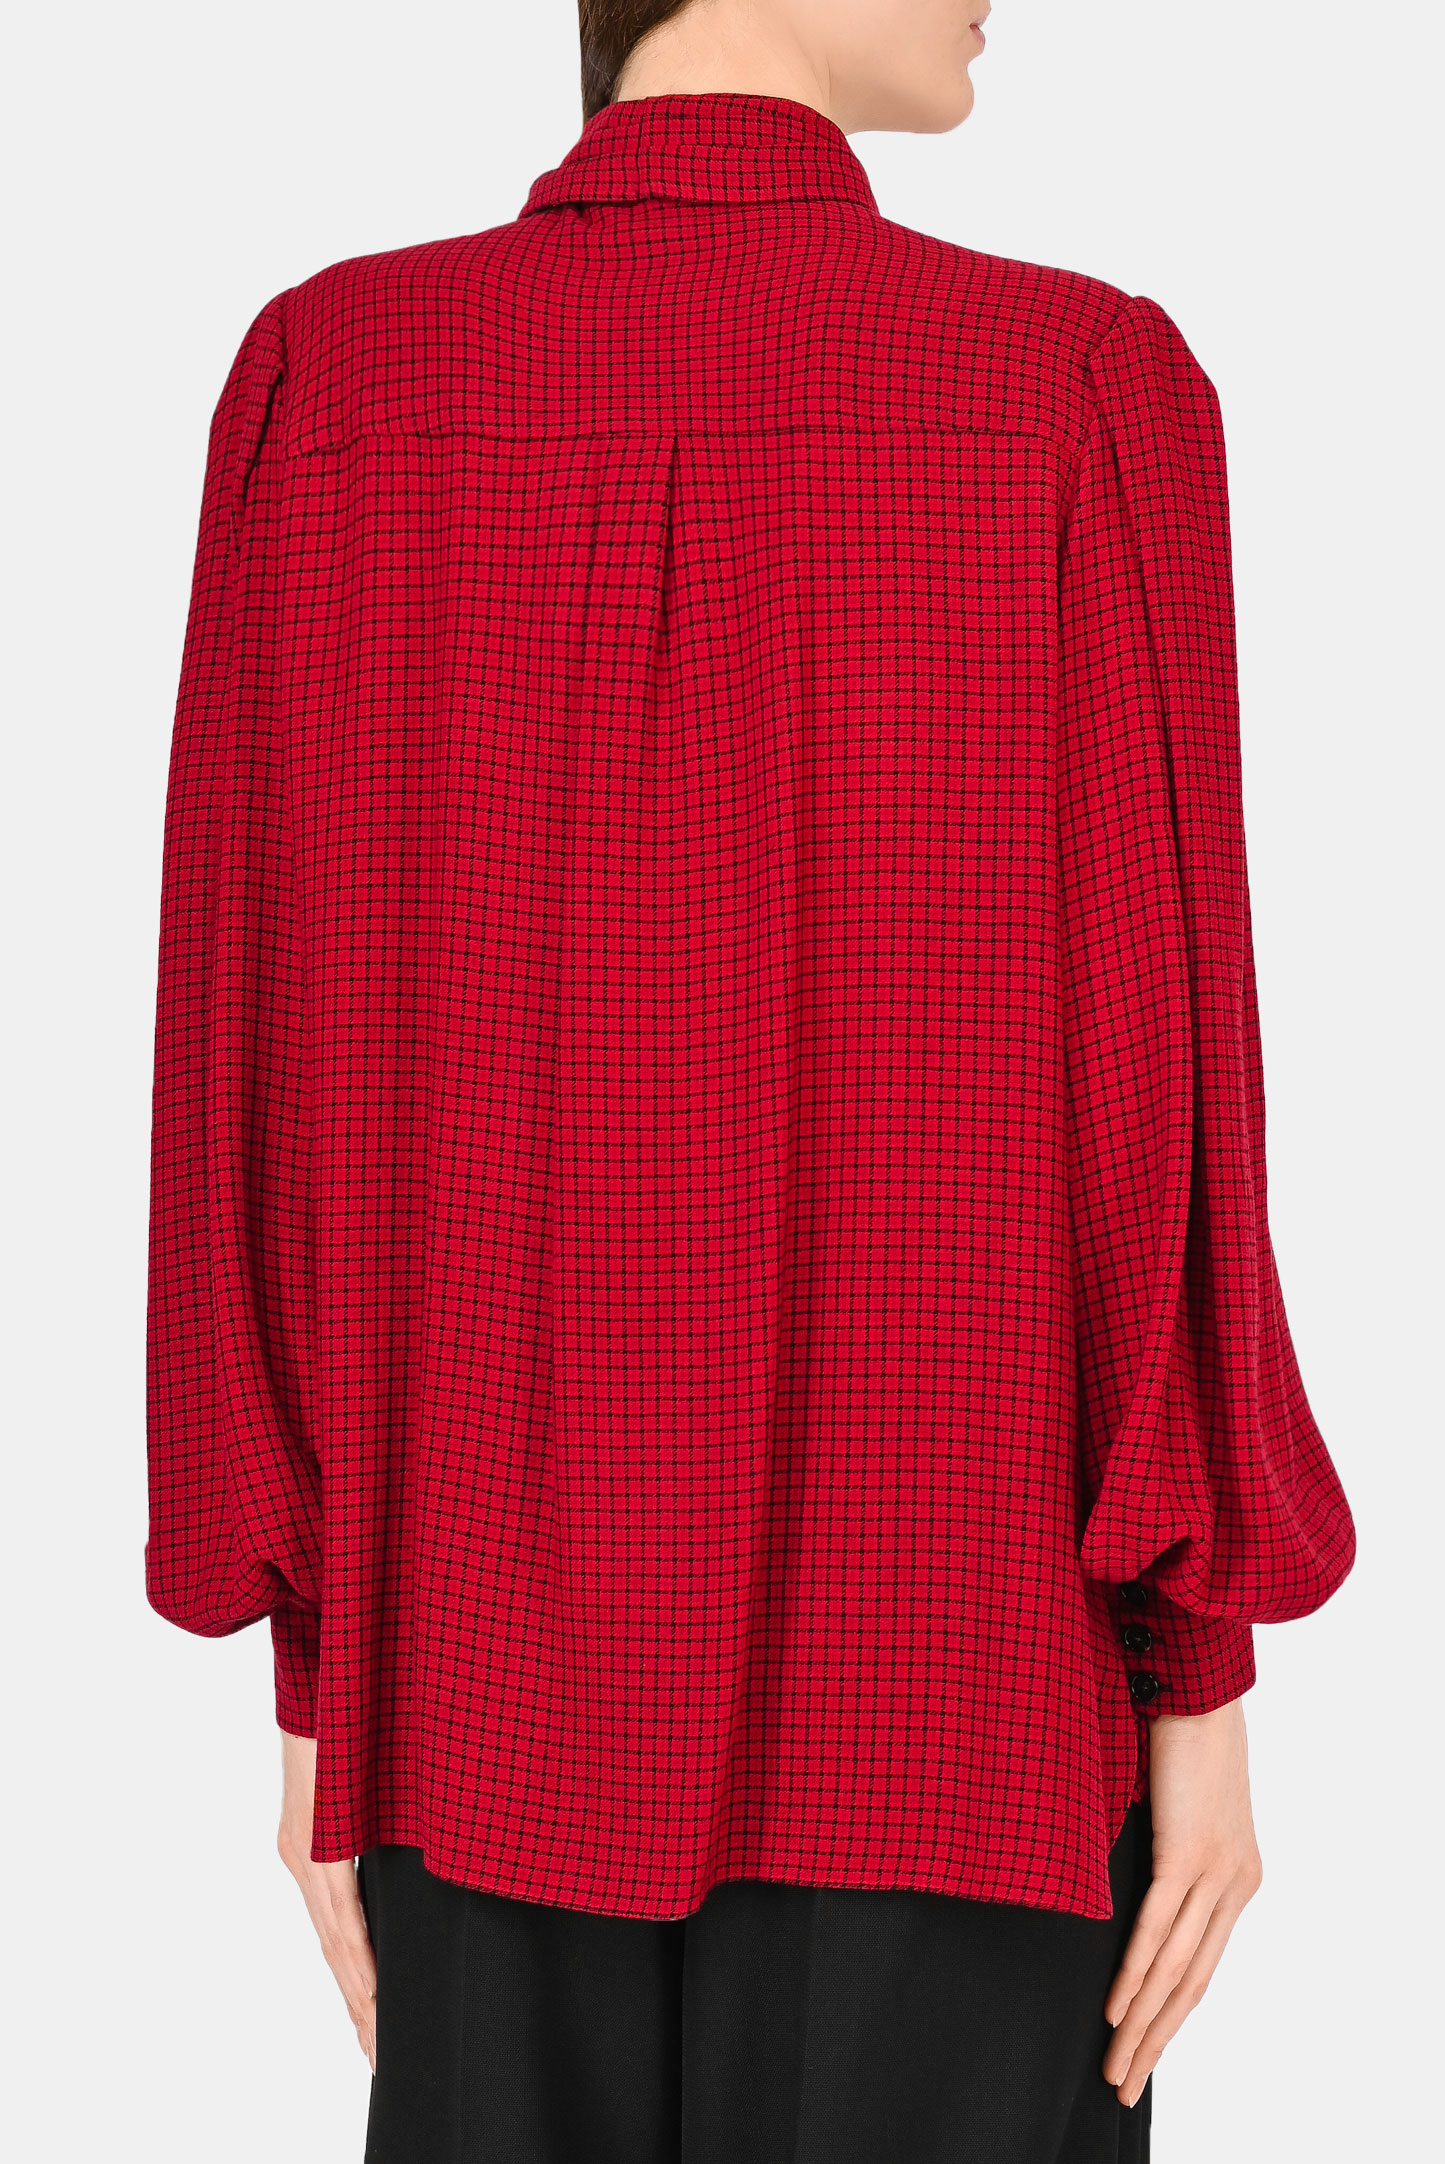 Блуза ALEXANDRE VAUTHIER 213SH1506, цвет: Бордовый, Женский